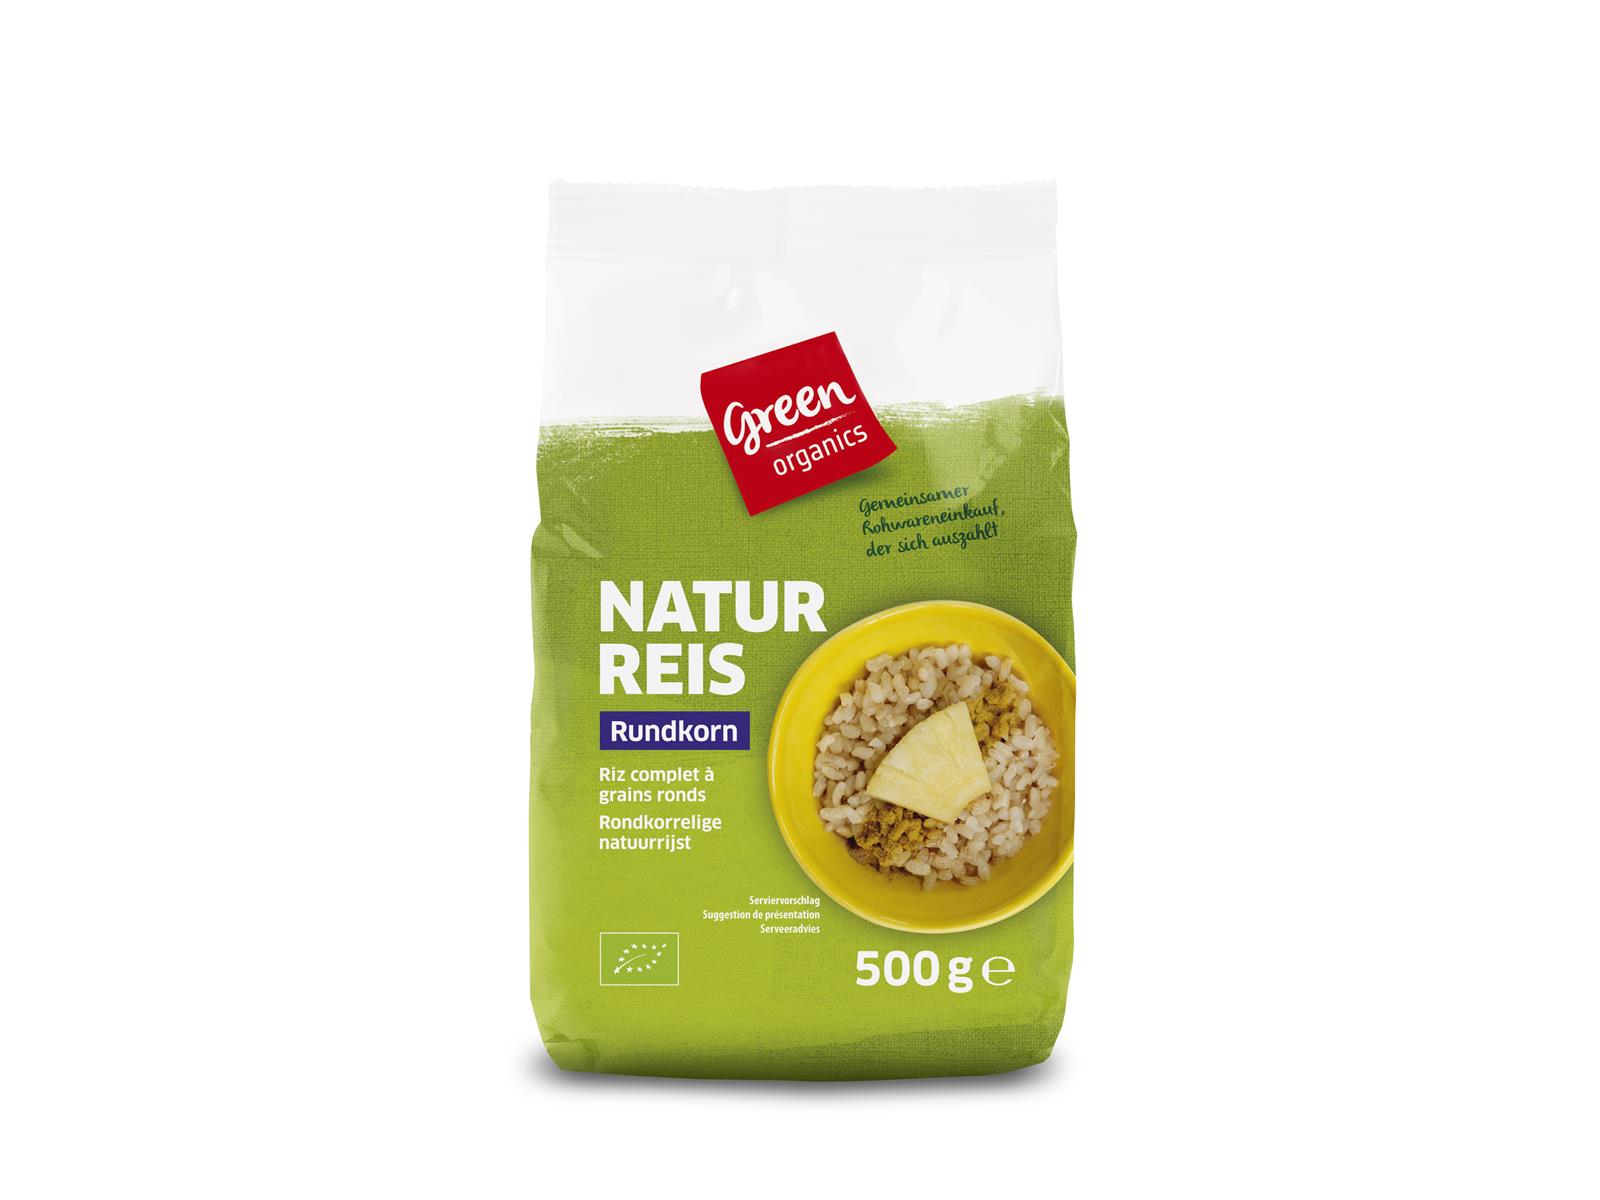 greenorganics Naturreis Rundkorn 500 g